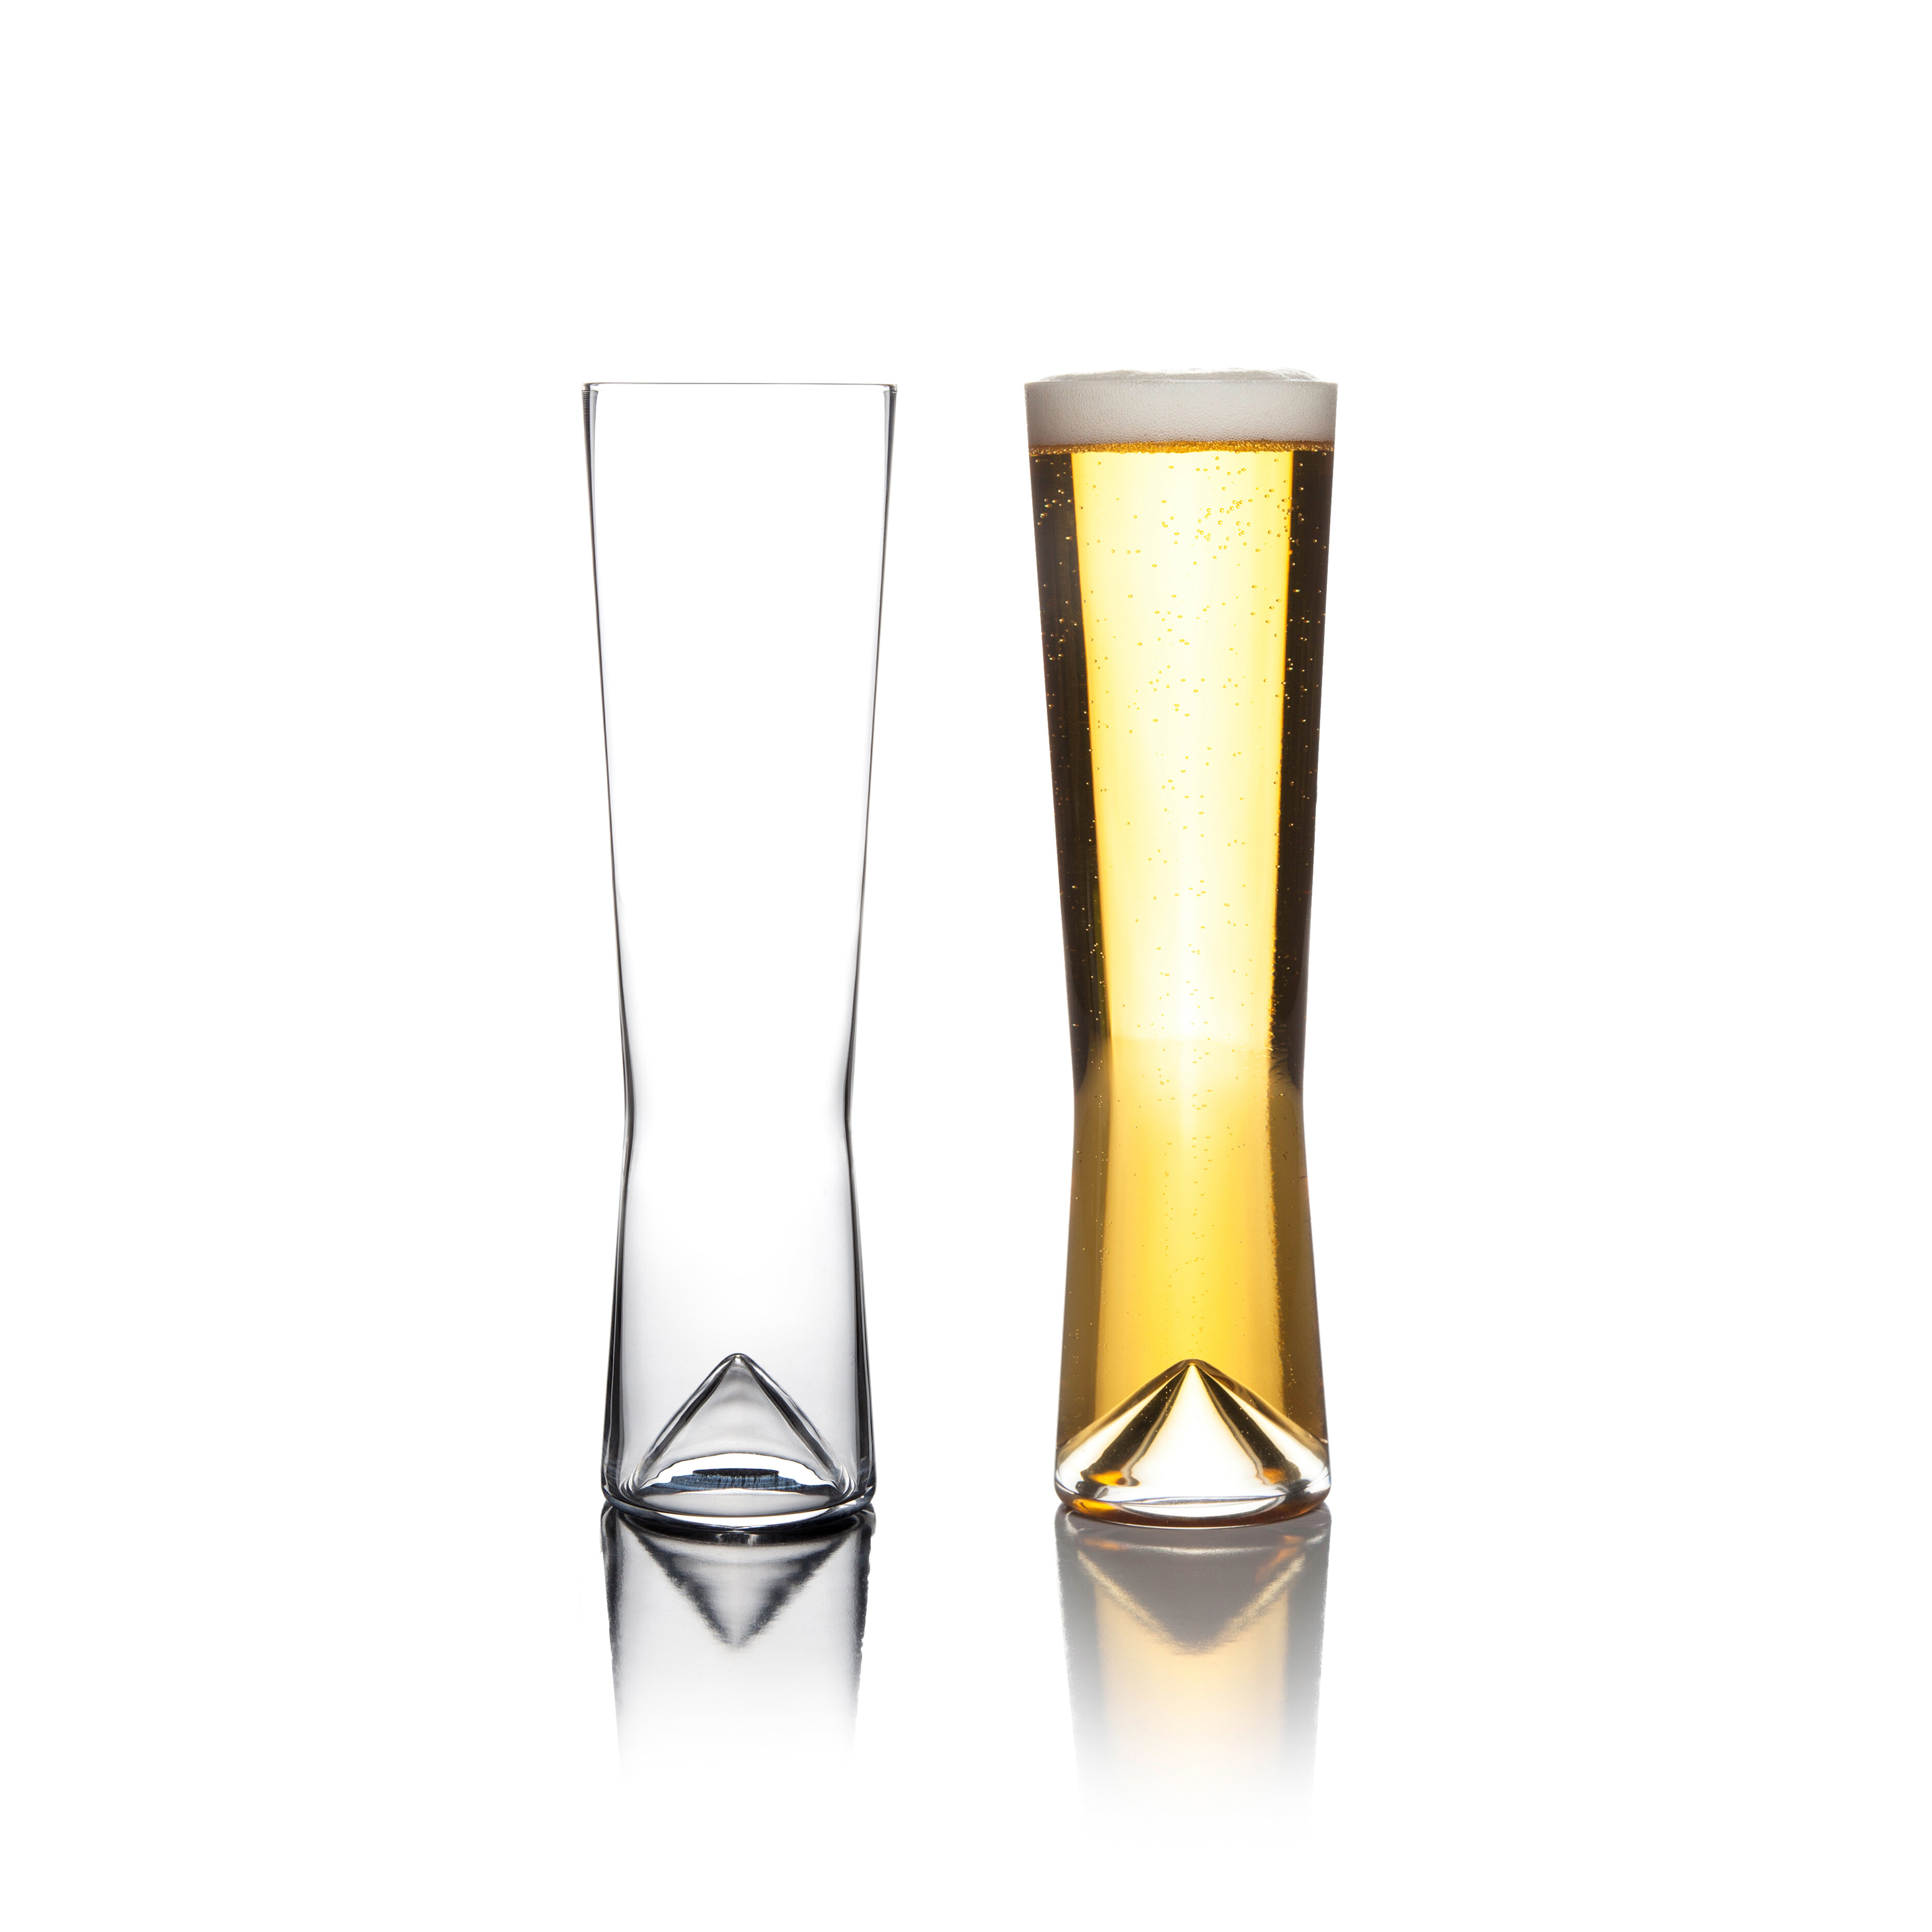 Spiegelau 6 - Piece 19.1oz. Lead Free Crystal Whiskey Glass Glassware Set &  Reviews